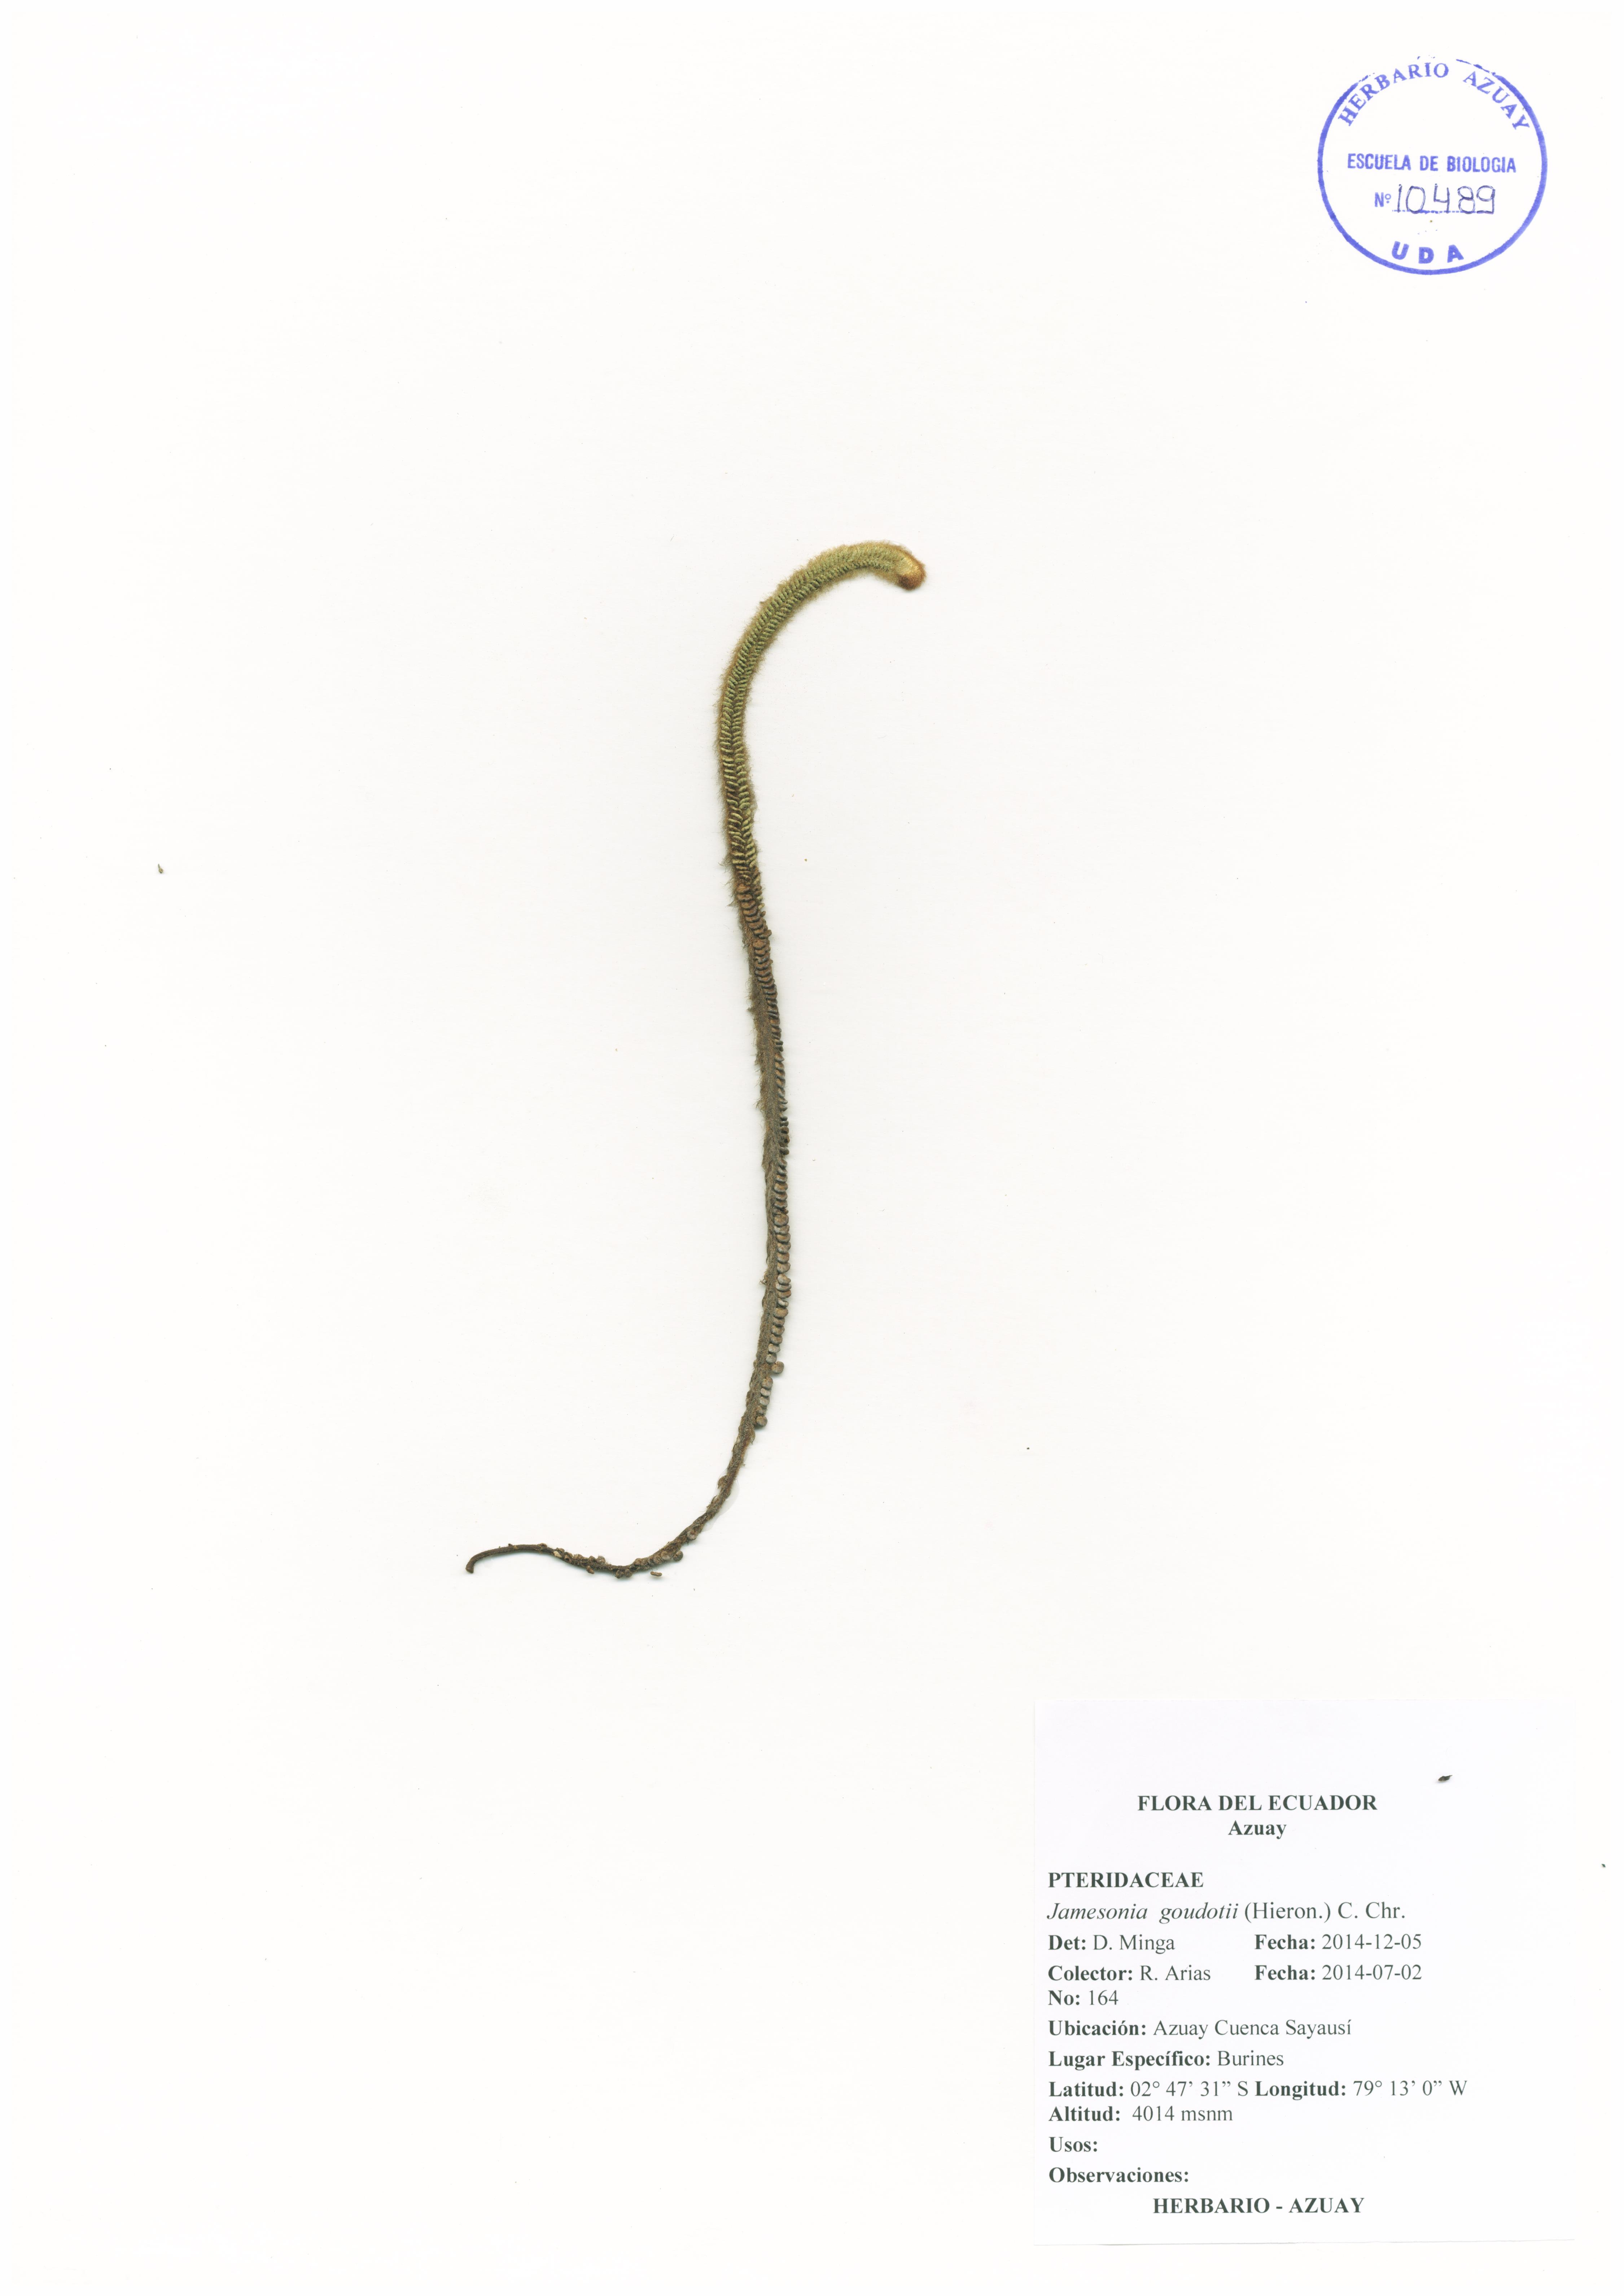 Jamesonia goudotii (Hieron.) C. Chr.